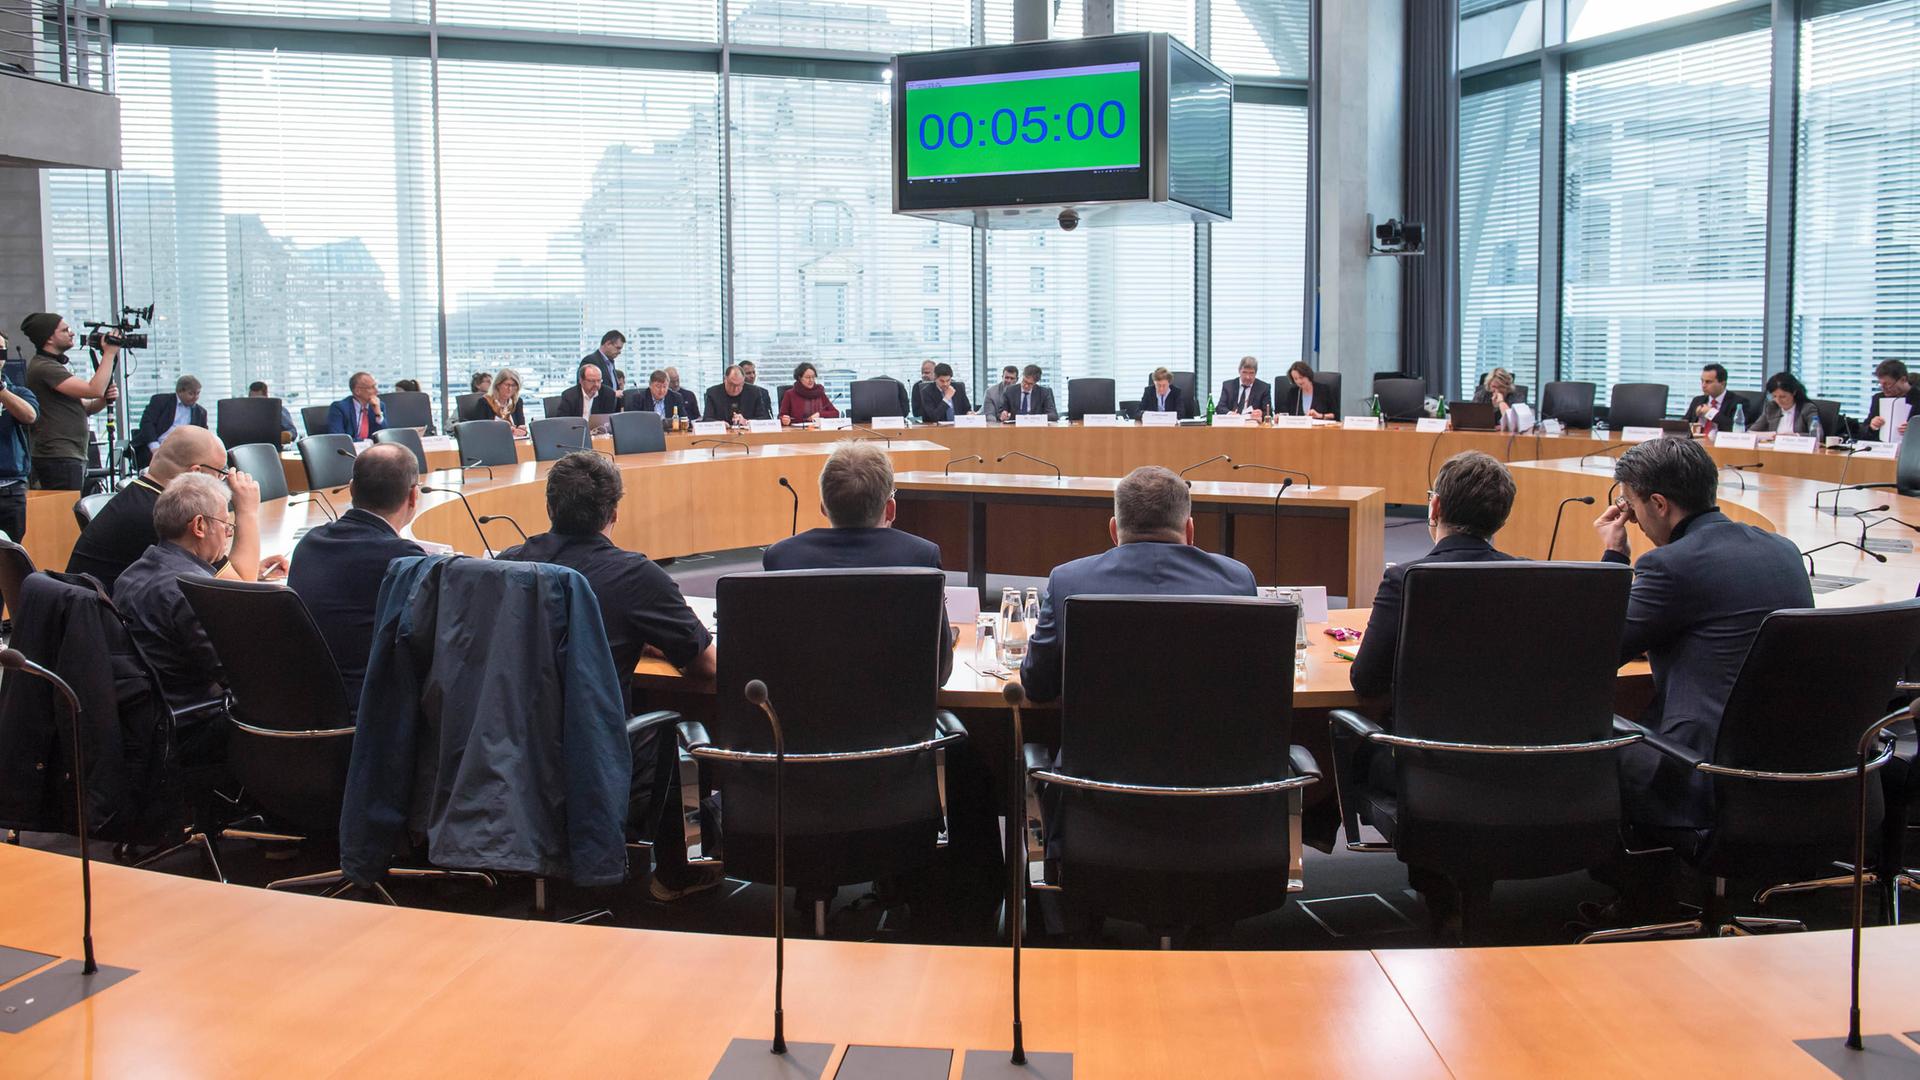 Der Sportausschuss des deutschen Bundestags während einer öffentlichen Sitzung.